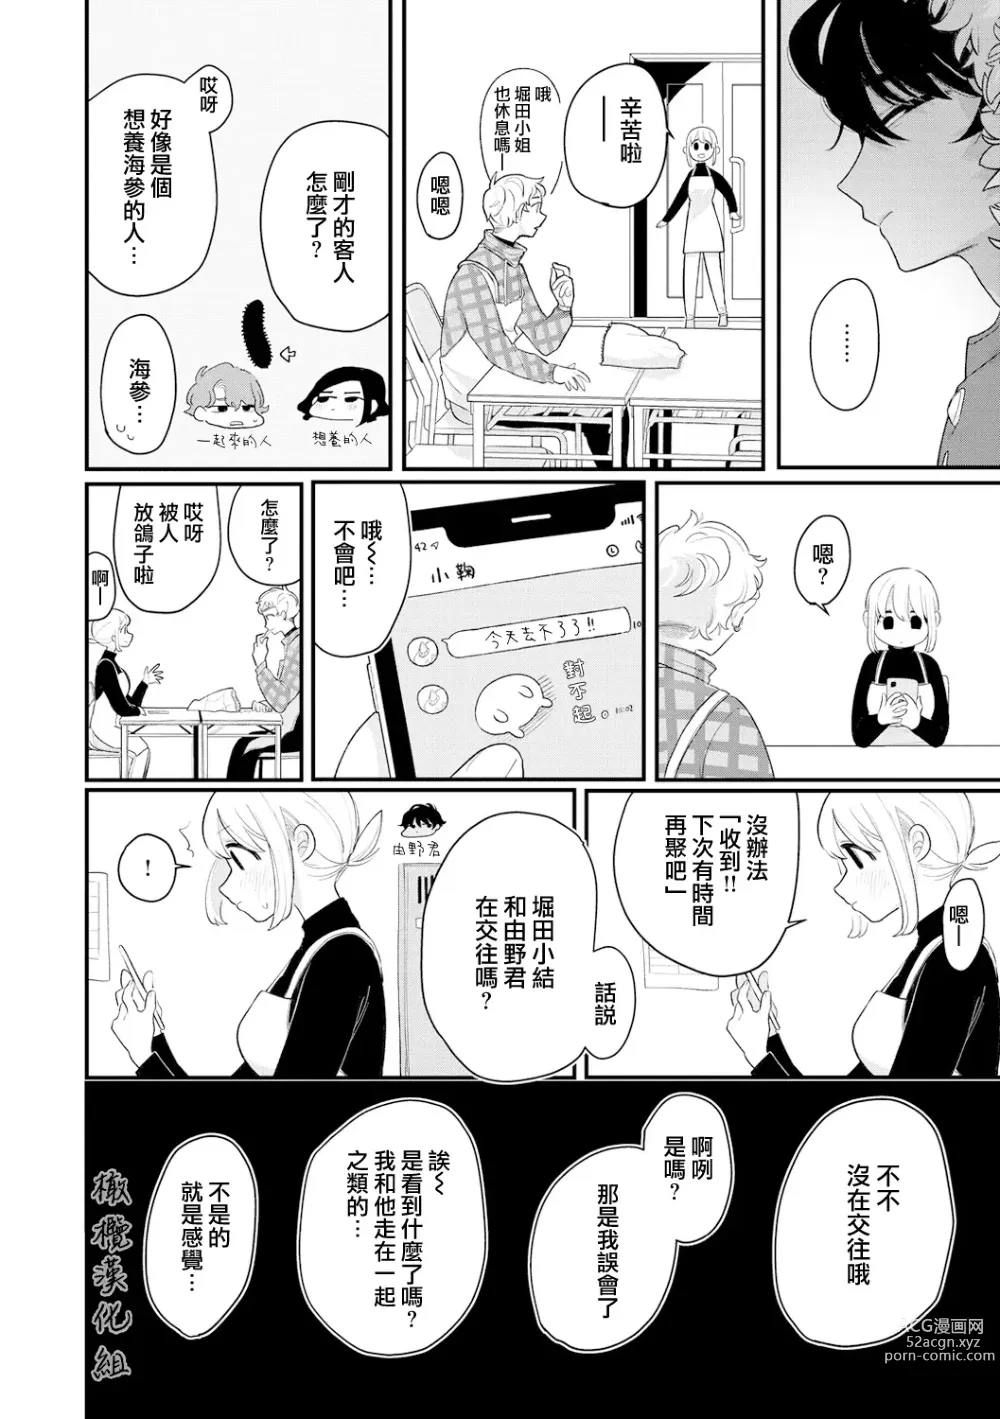 Page 6 of manga 好好相处吧